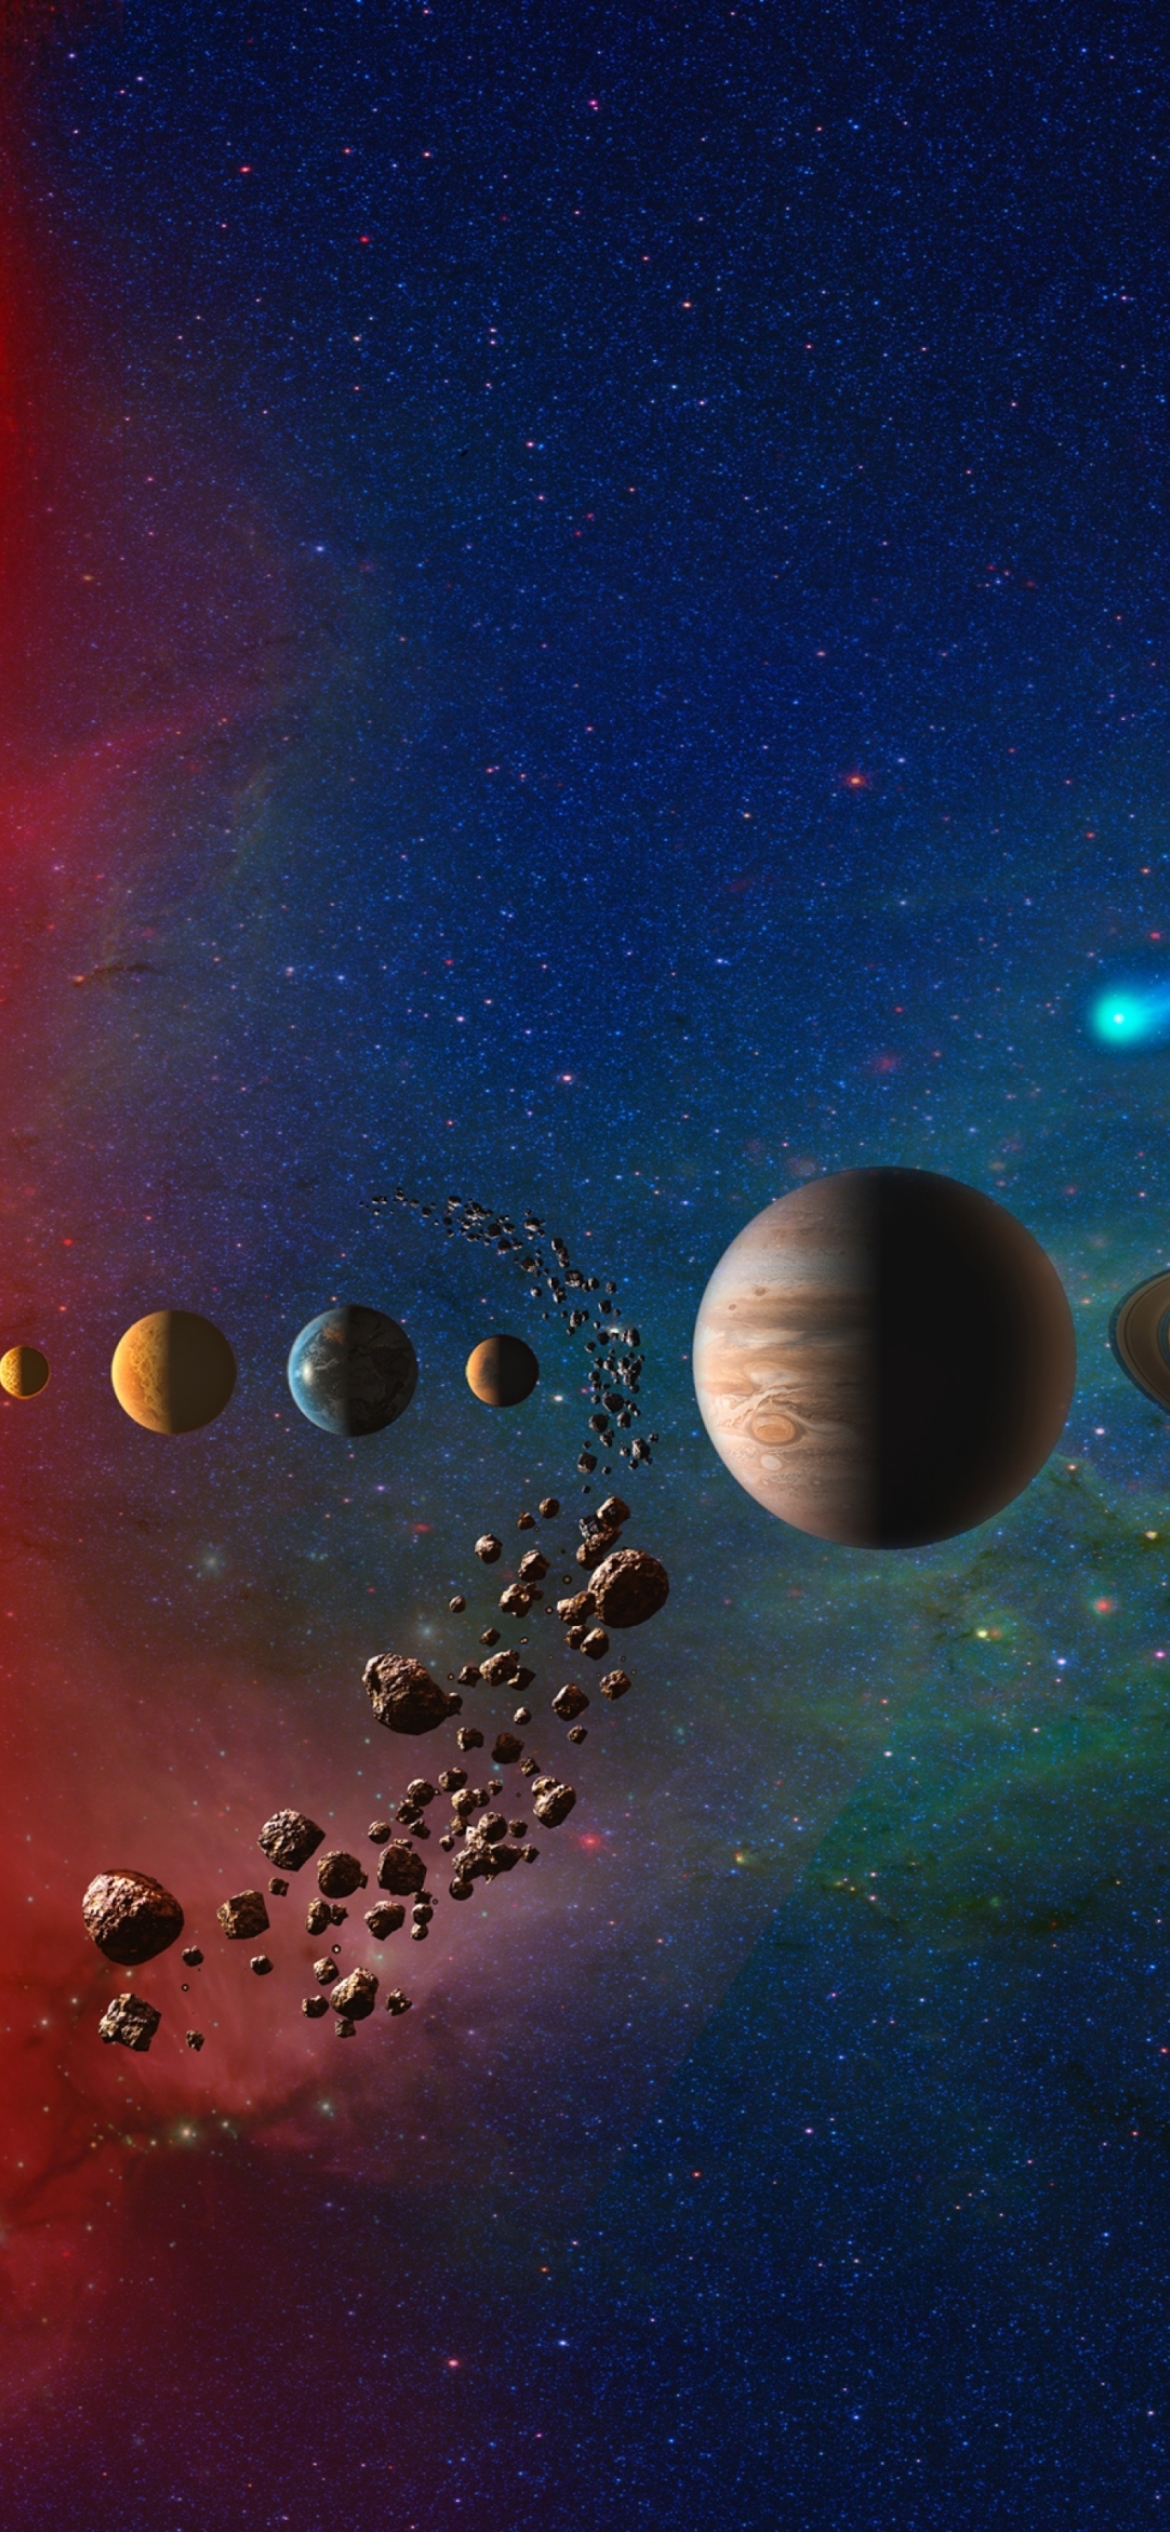 Solar System wallpaper 1170x2532